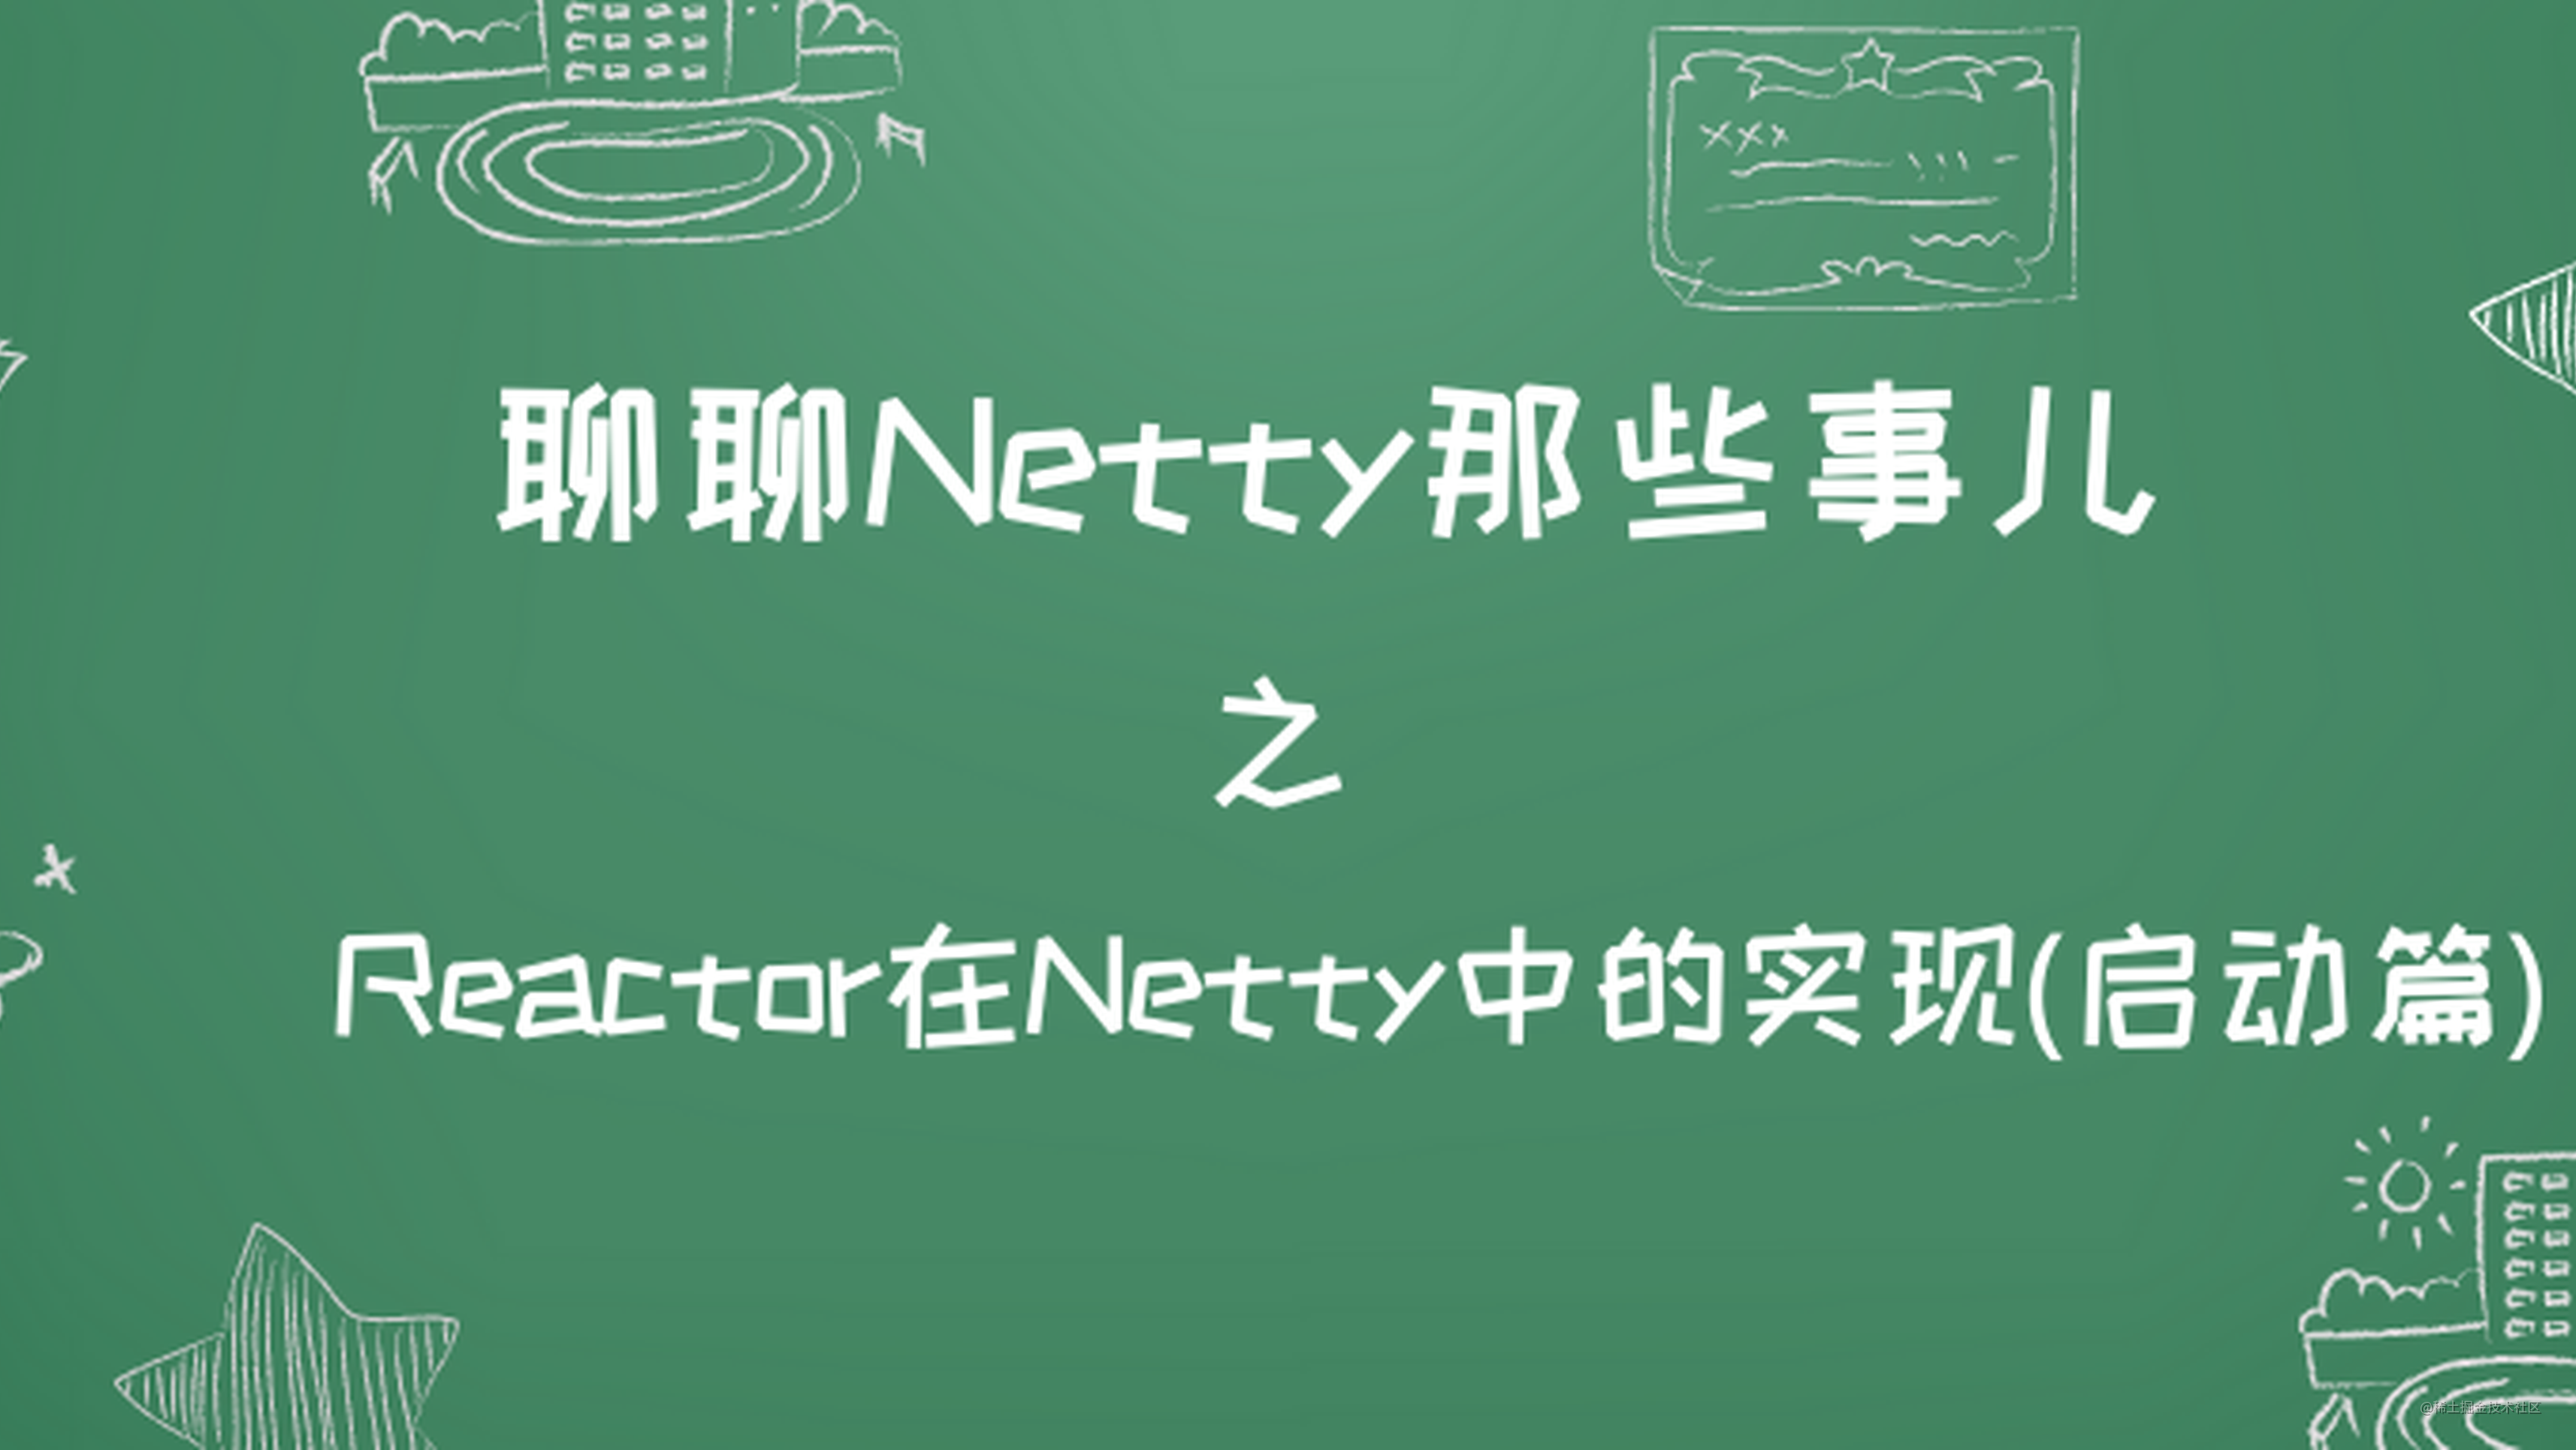 详细图解Netty Reactor启动全流程 | 万字长文 | 多图预警